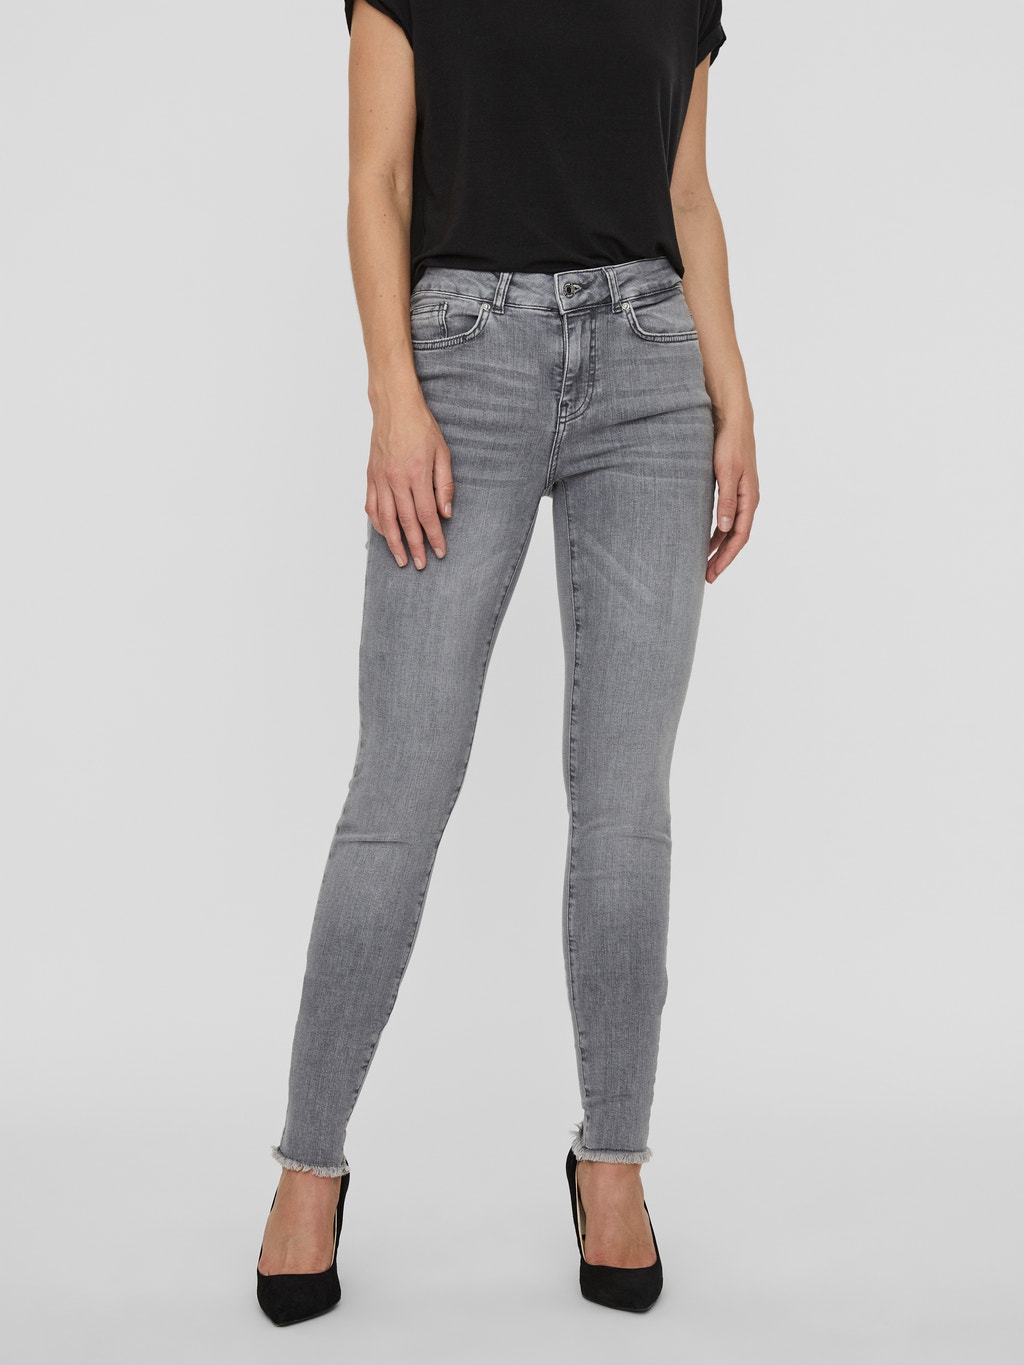 Reclame Elementair aantrekkelijk Skinny fit Jeans met 25% korting! | Vero Moda®